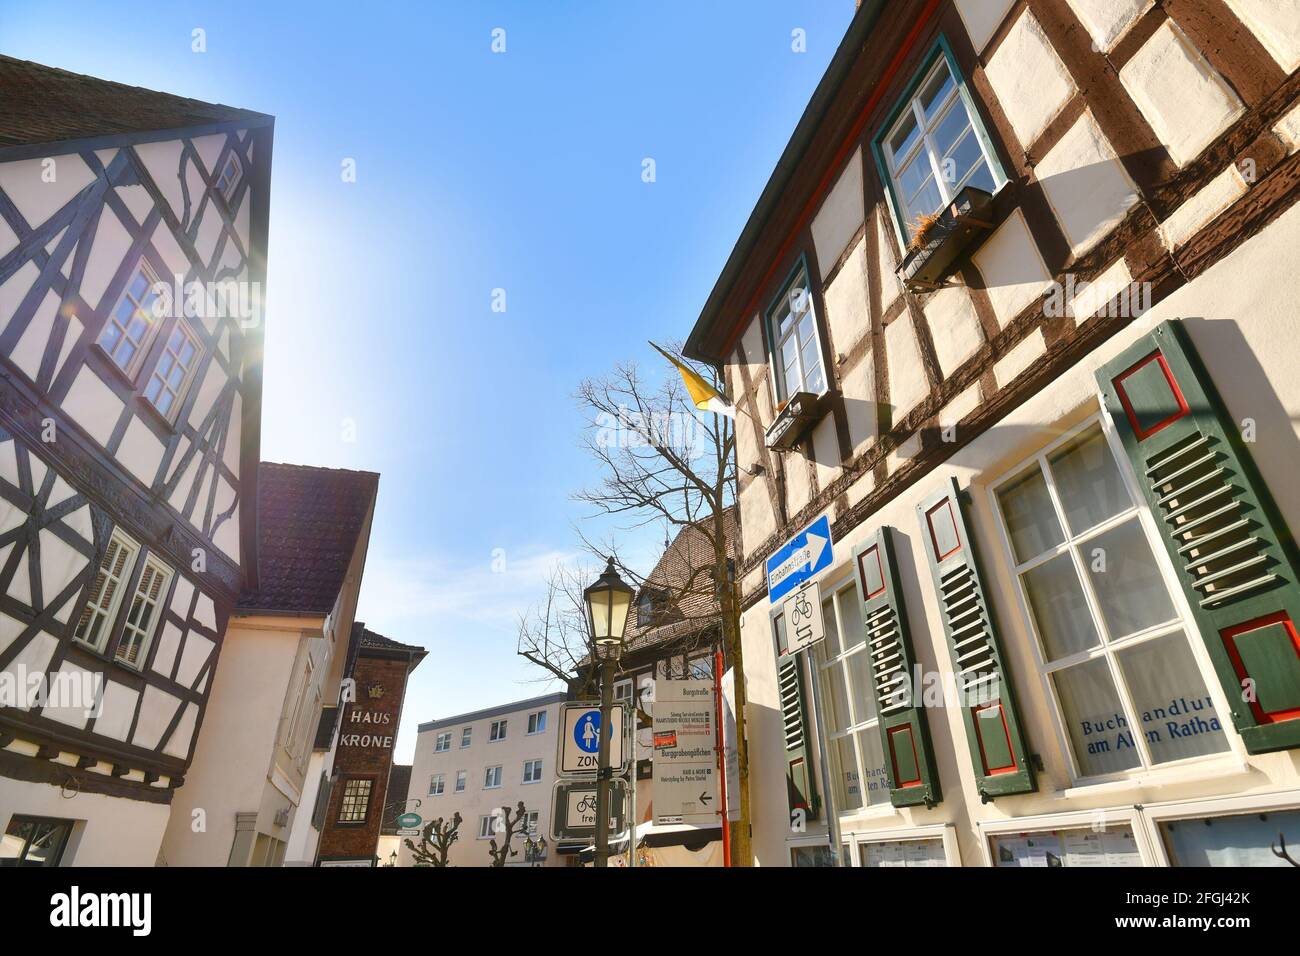 Hofheim, Allemagne - Mars 2021: Rue latérale avec des bâtiments traditionnels à colombages dans le vieux centre-ville historique de Hofheim Banque D'Images